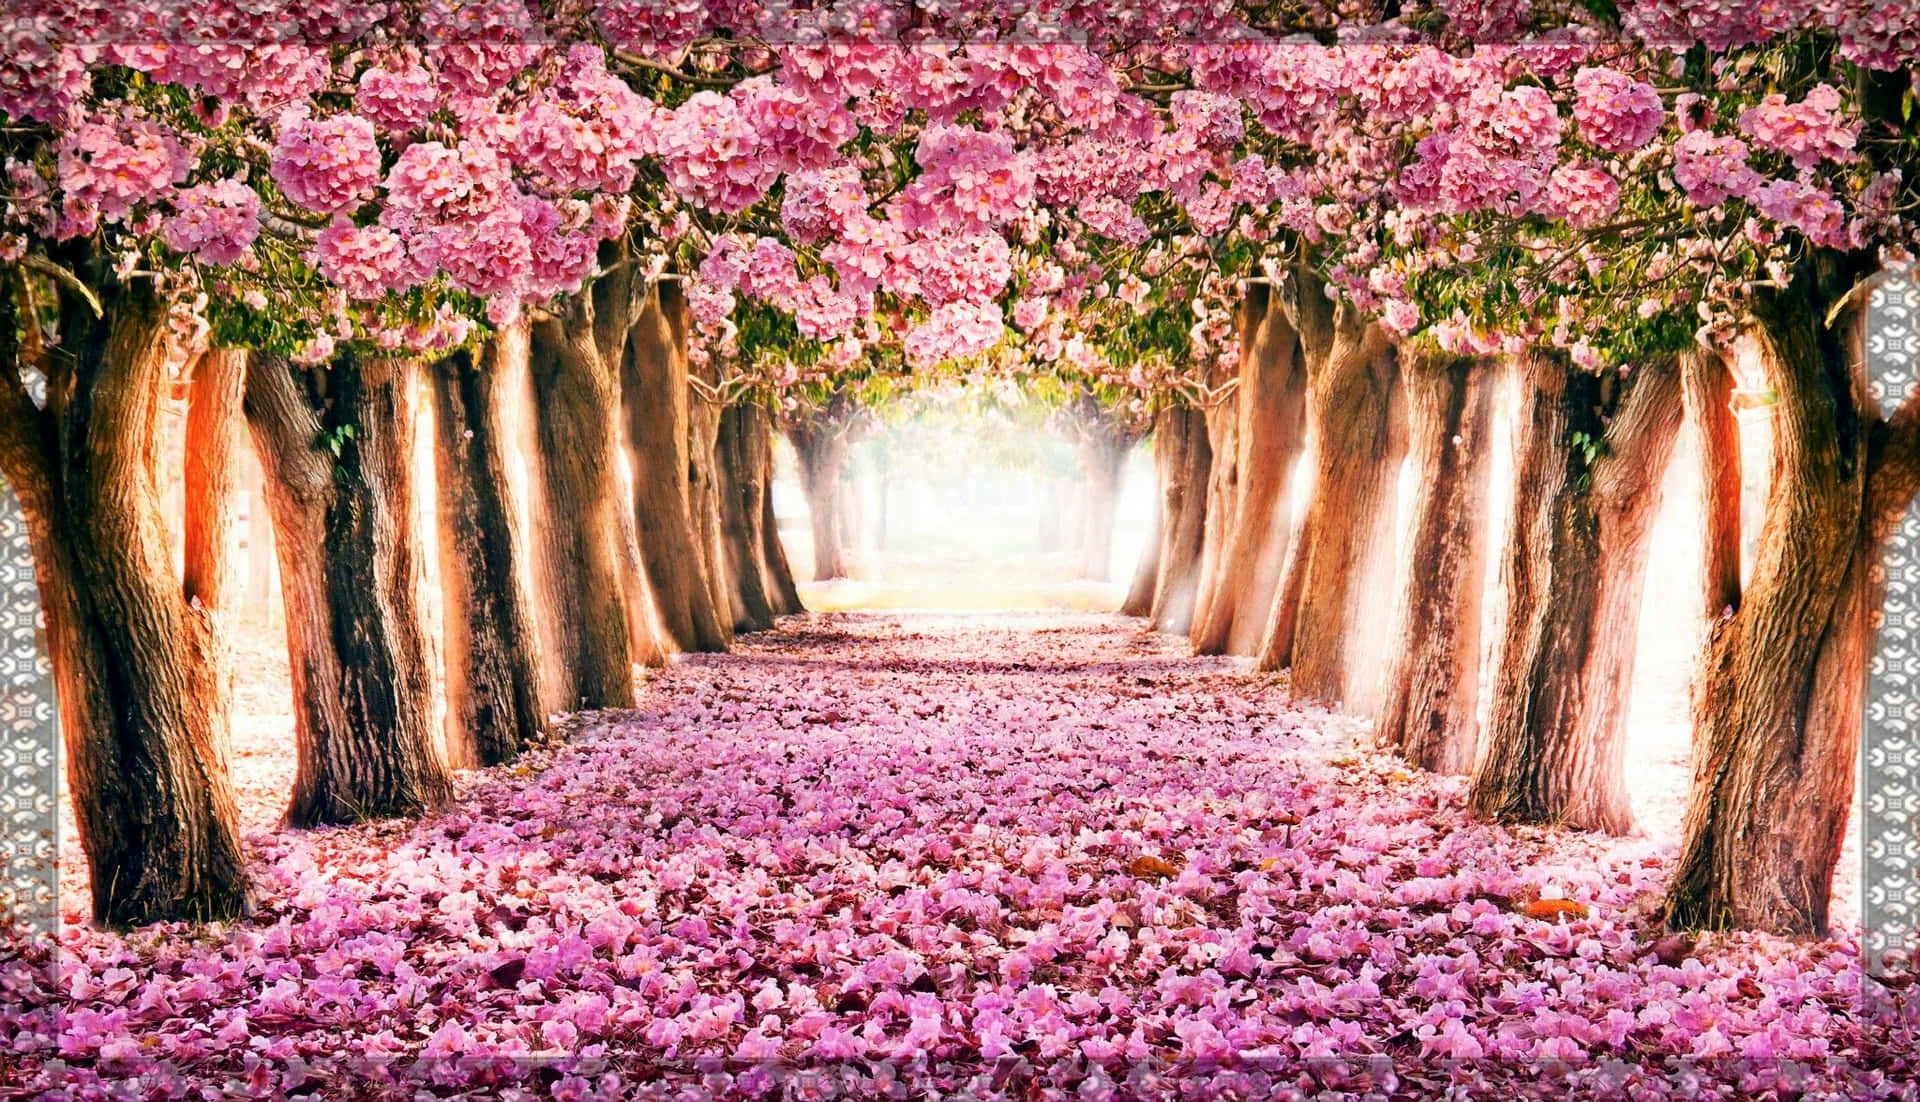 Fondode Pantalla De Primavera Con Un Túnel De Árboles De Cerezo Rosados